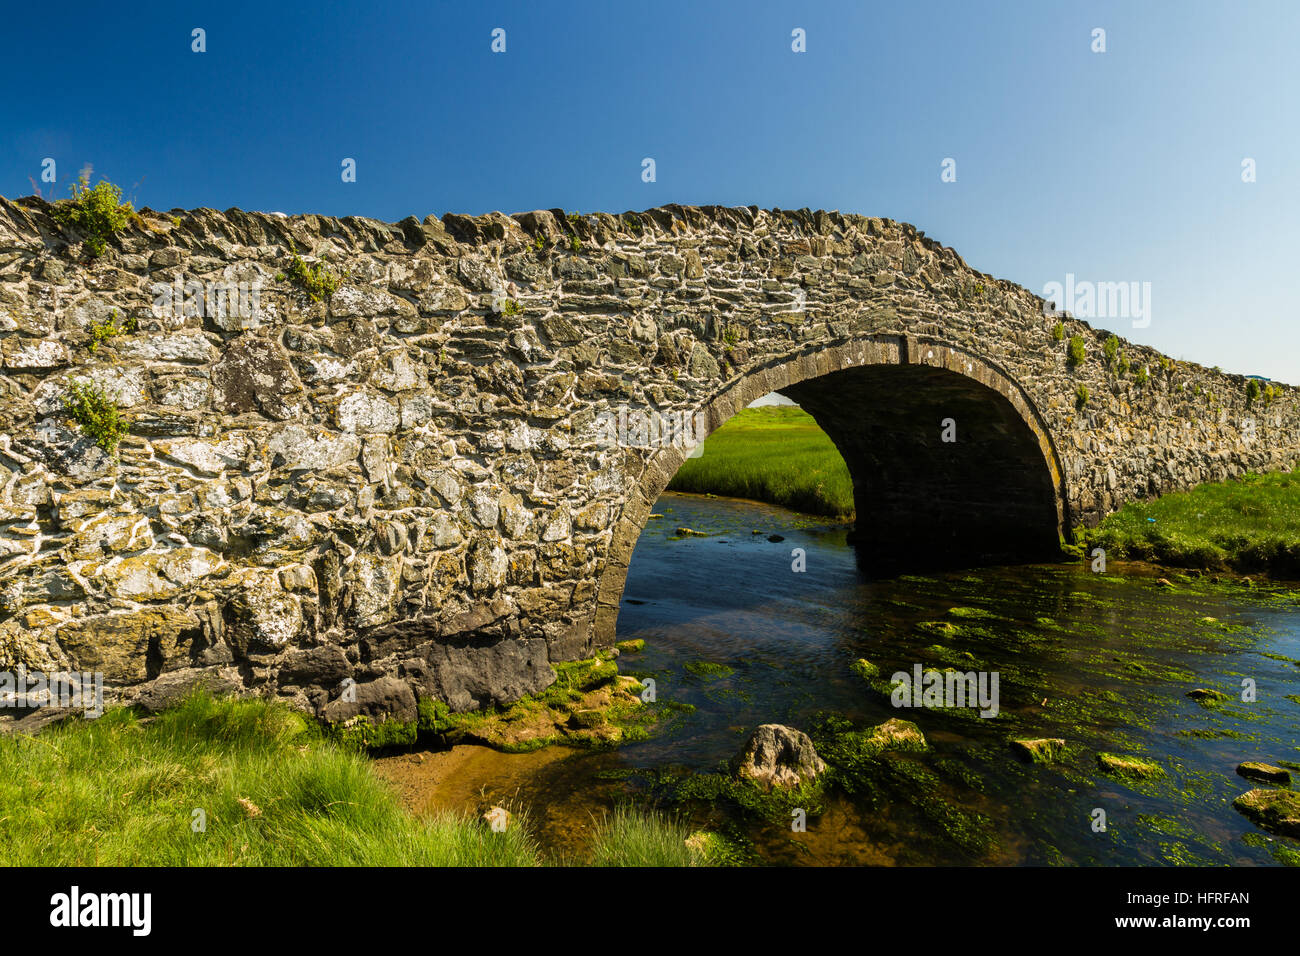 Dix-huitième siècle en pierre pont arrière bosse, avec canal d'eau, la rivière, Ffraw et ciel bleu. Aberffraw, Anglesey, Pays de Galles, Royaume-Uni, Europe Banque D'Images